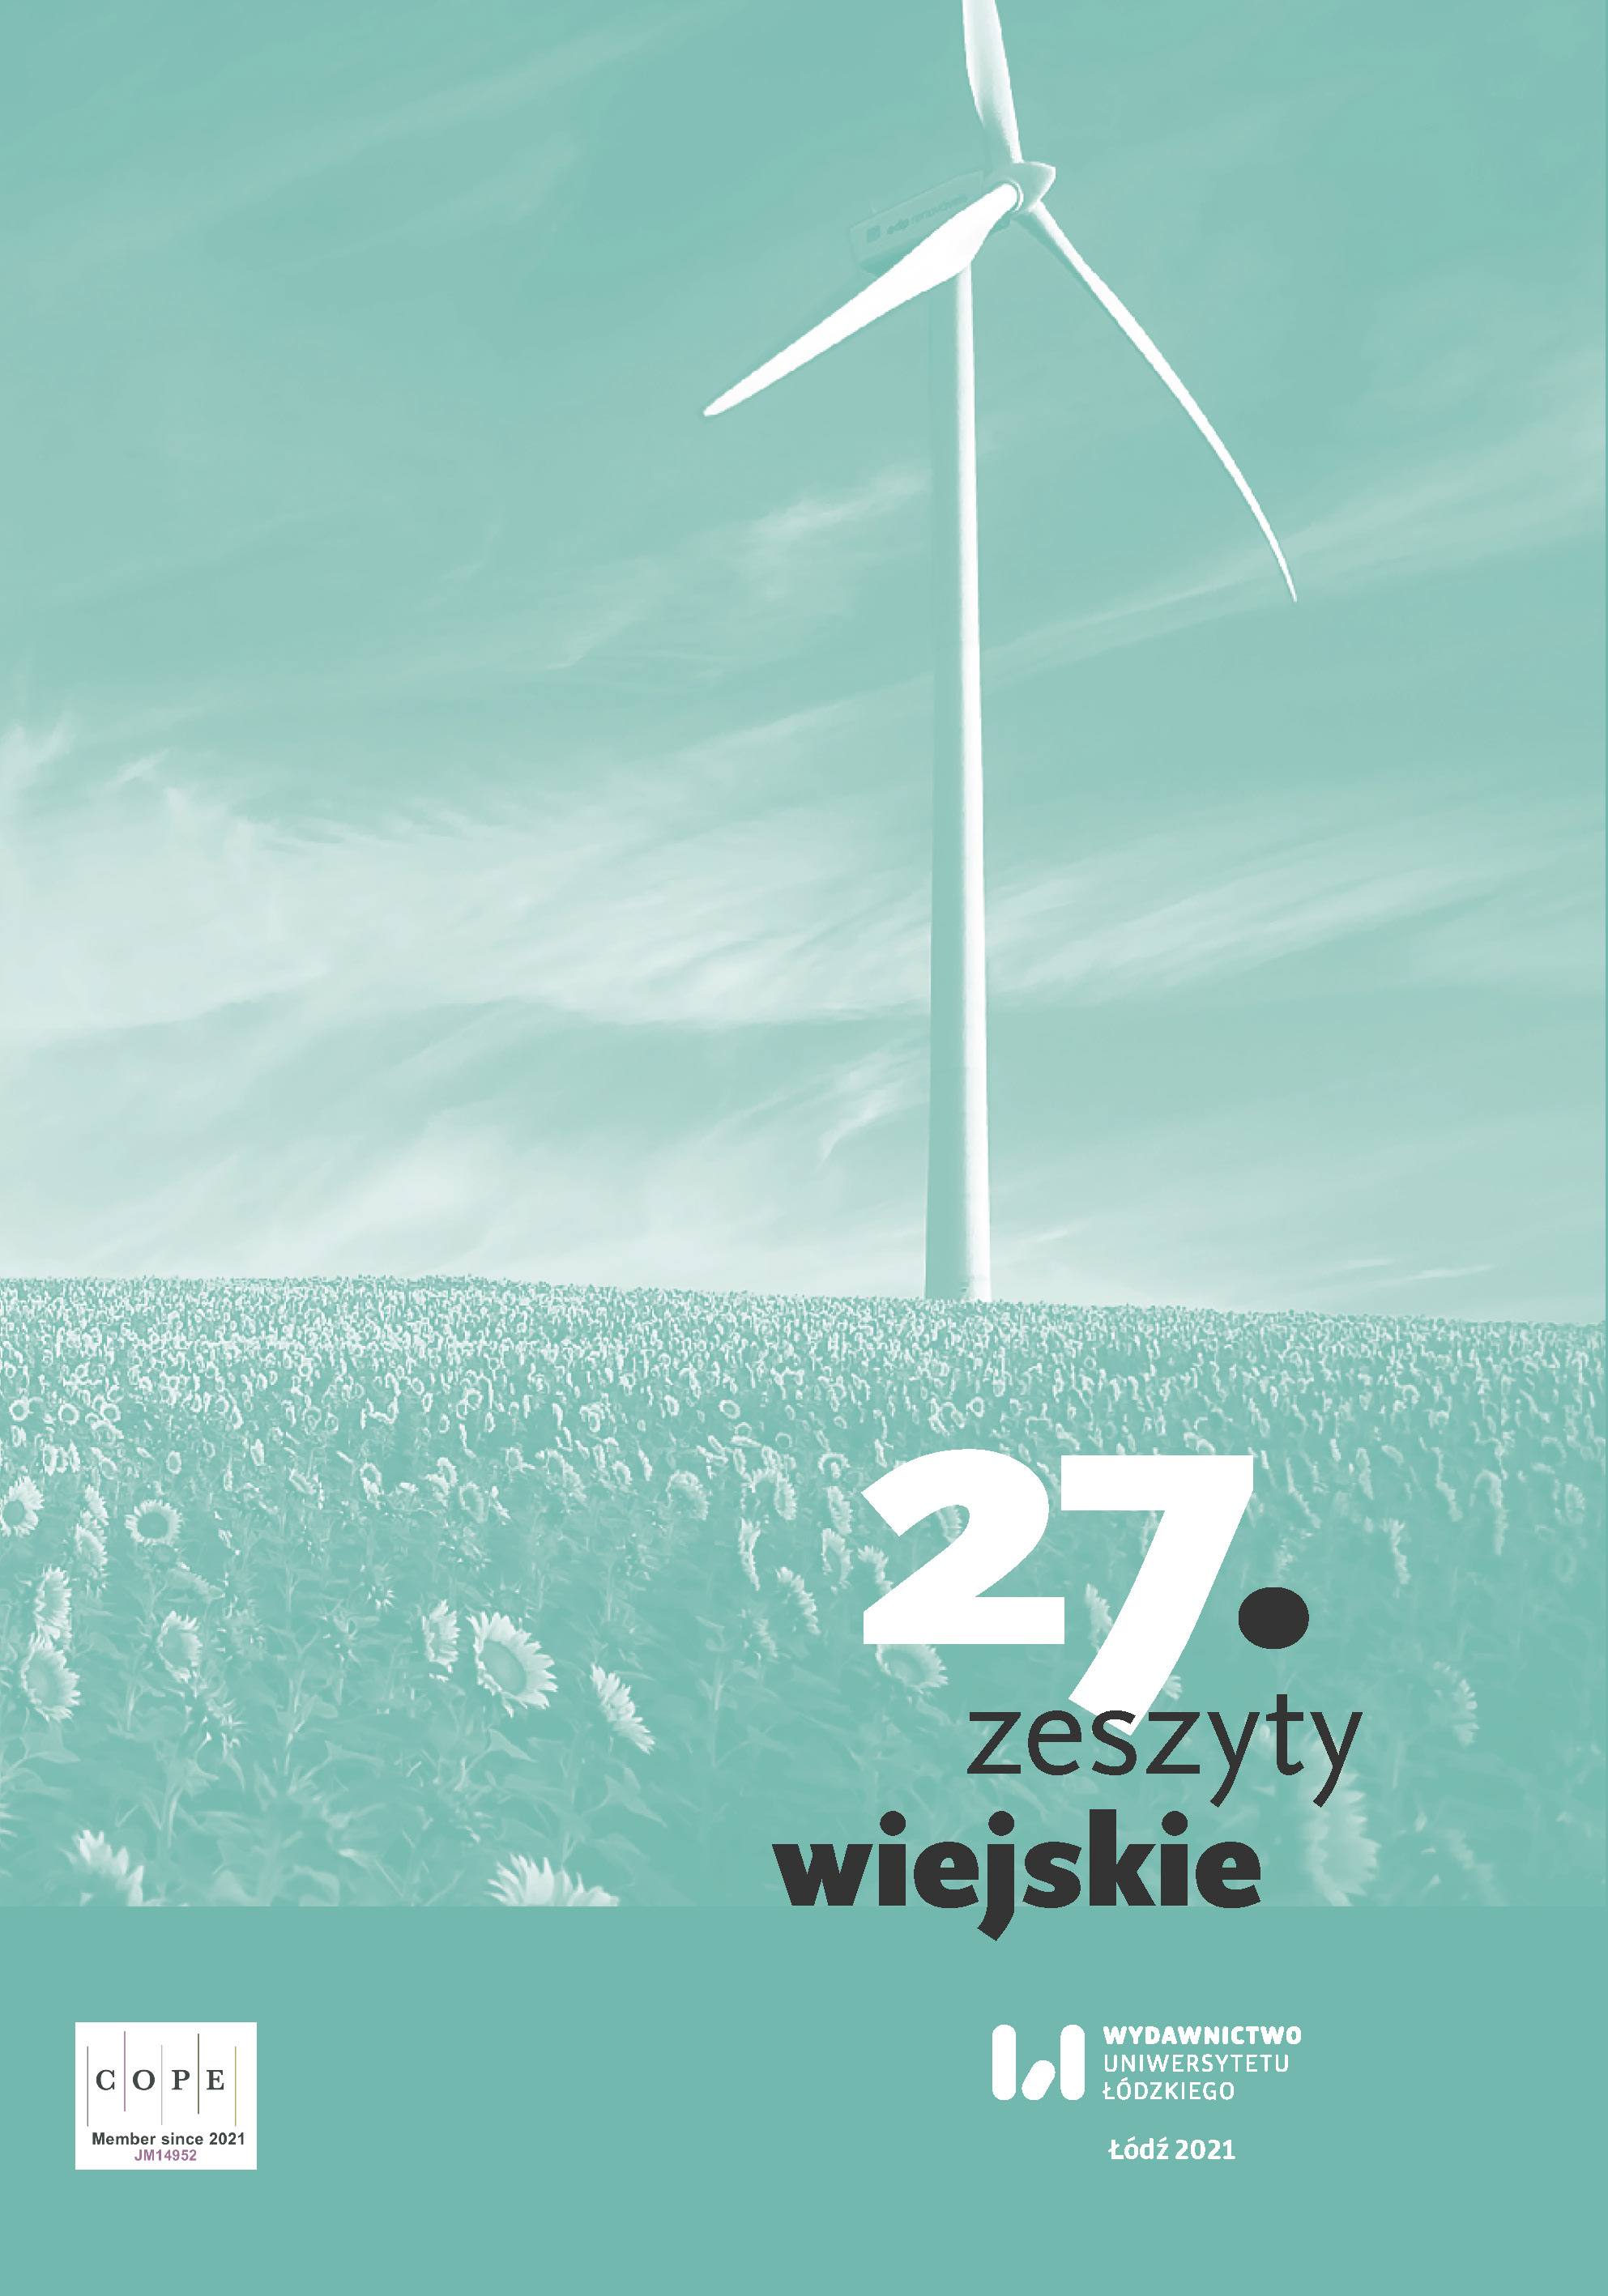 The salt heritage of the region in the activities of the Klub Przyjaciół Wieliczki (Wieliczka Friends Club) Cover Image